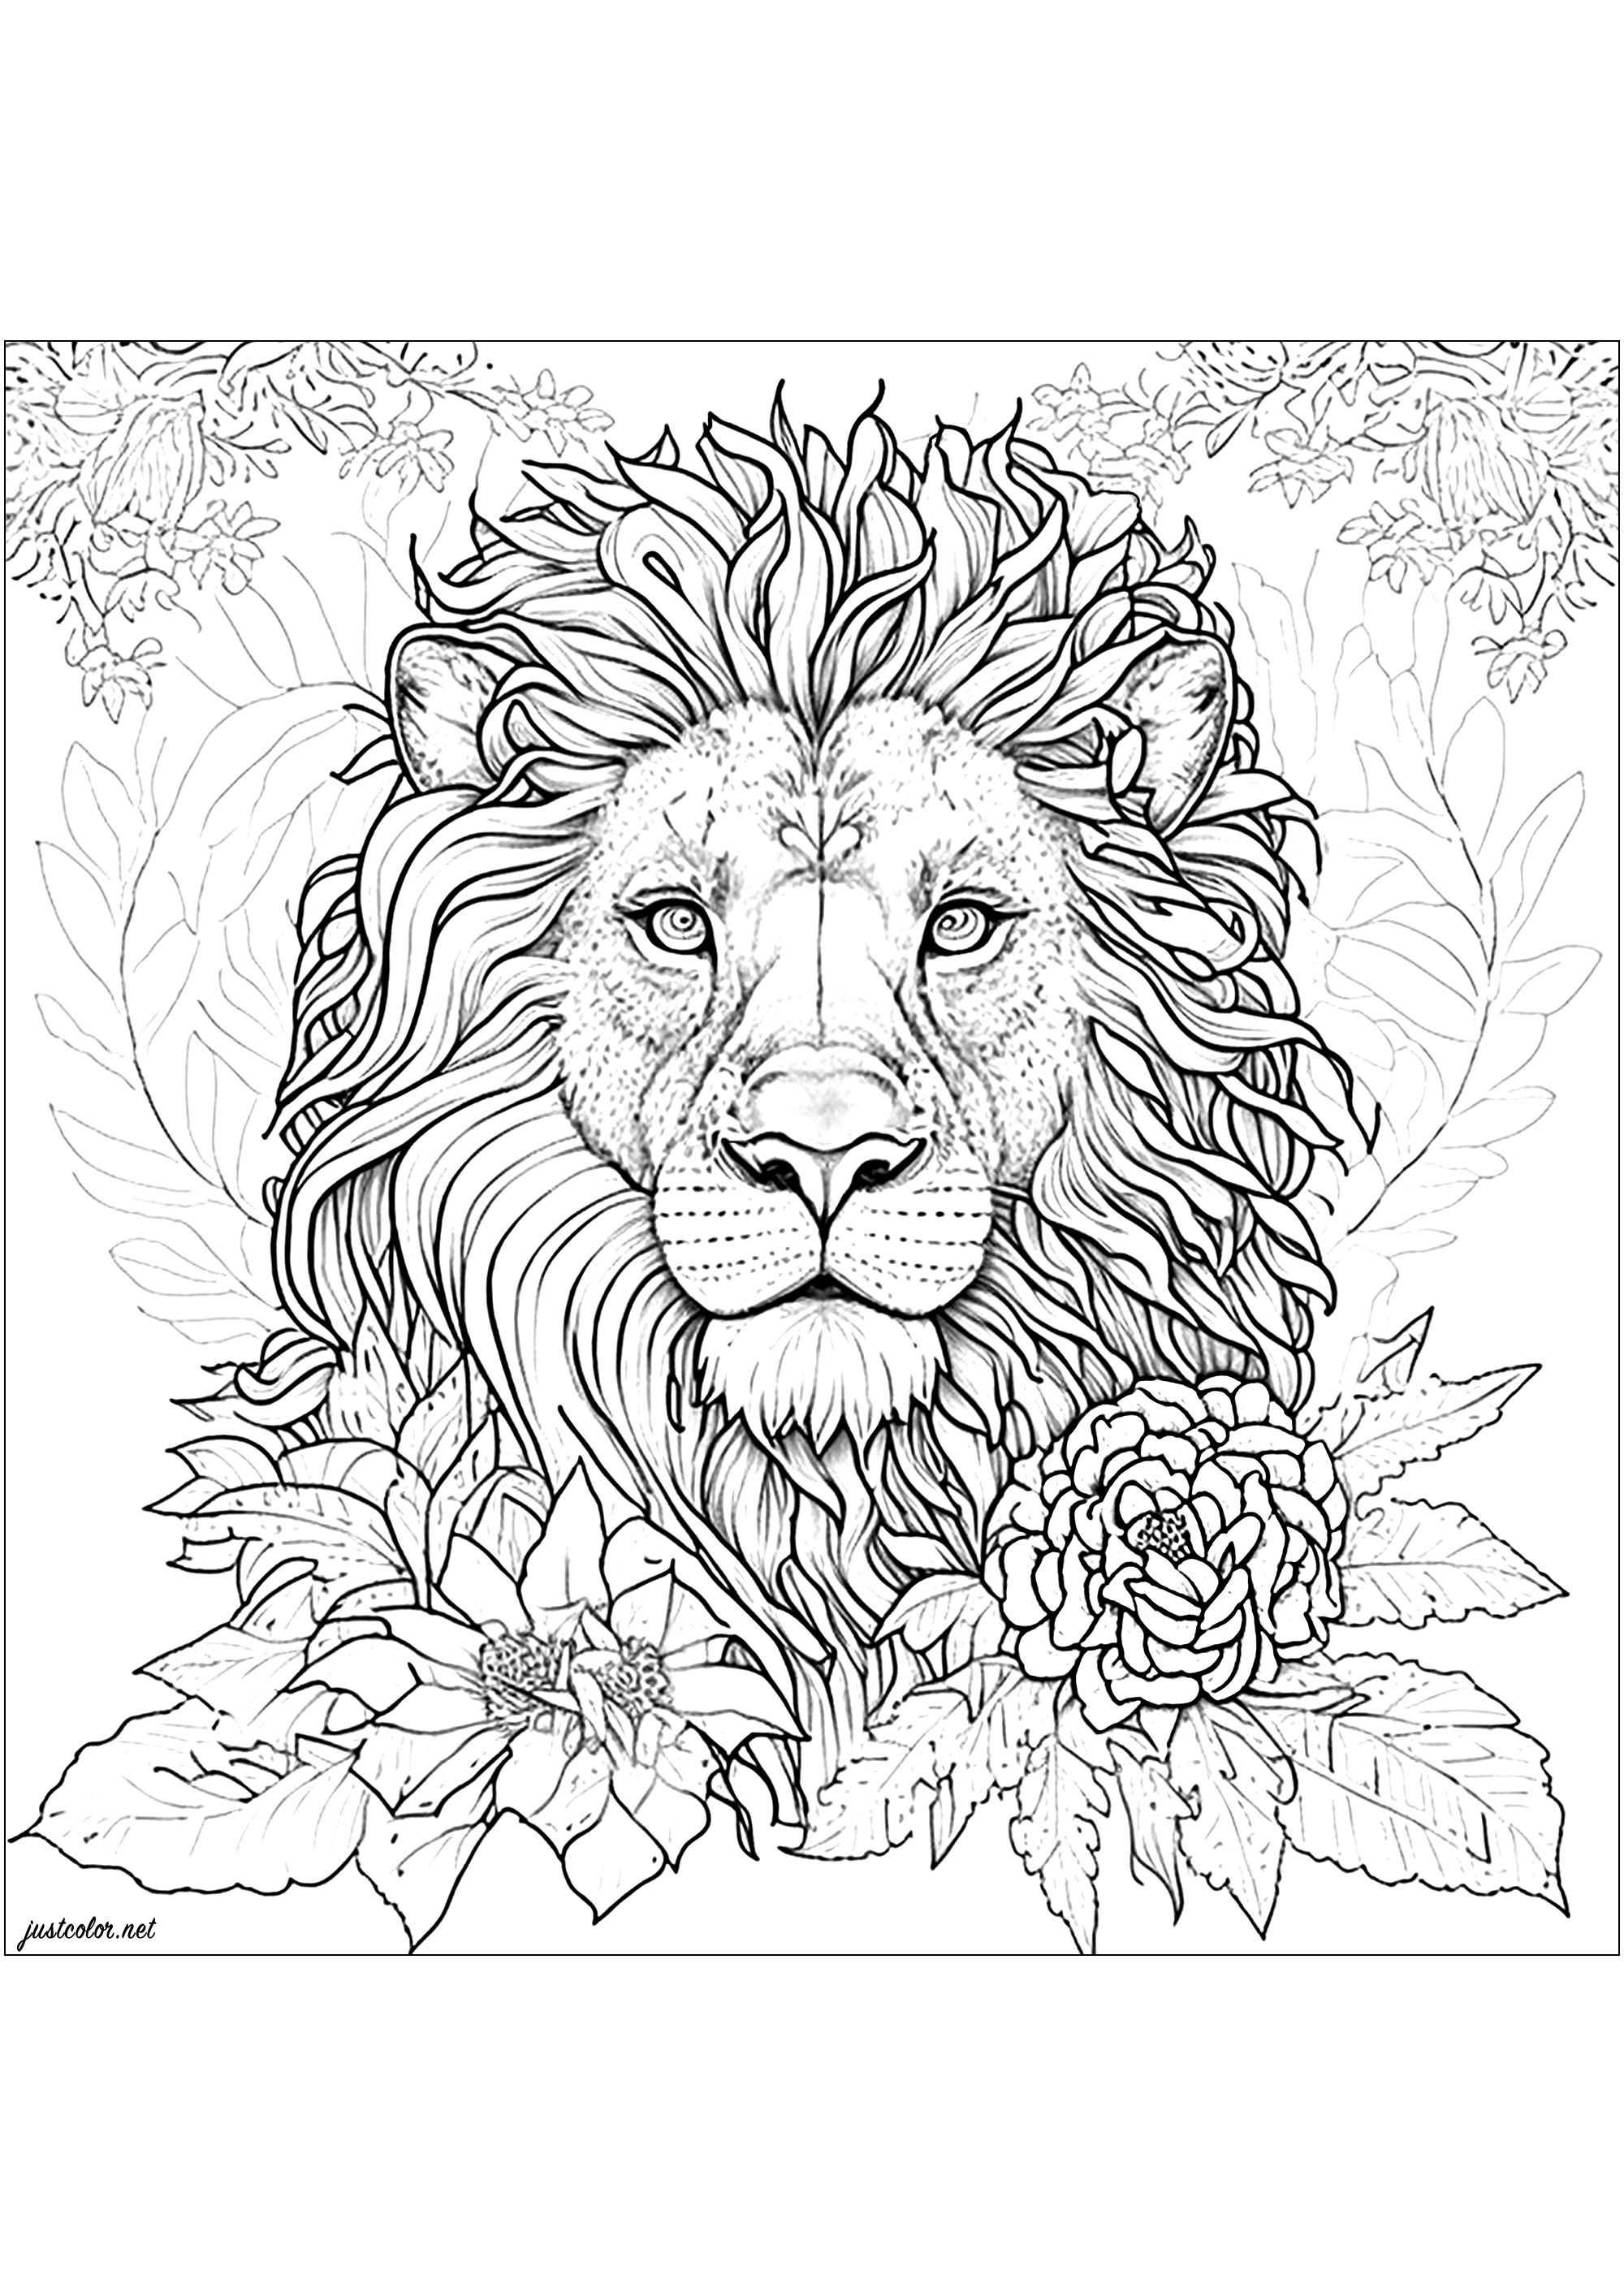 Colorear un león rodeado de hermosas flores. ¡Este dibujo de león es ultrarrealista y detallado! Tómate tu tiempo para colorear cada parte de su hermosa melena, y toda la vegetación que lo rodea.